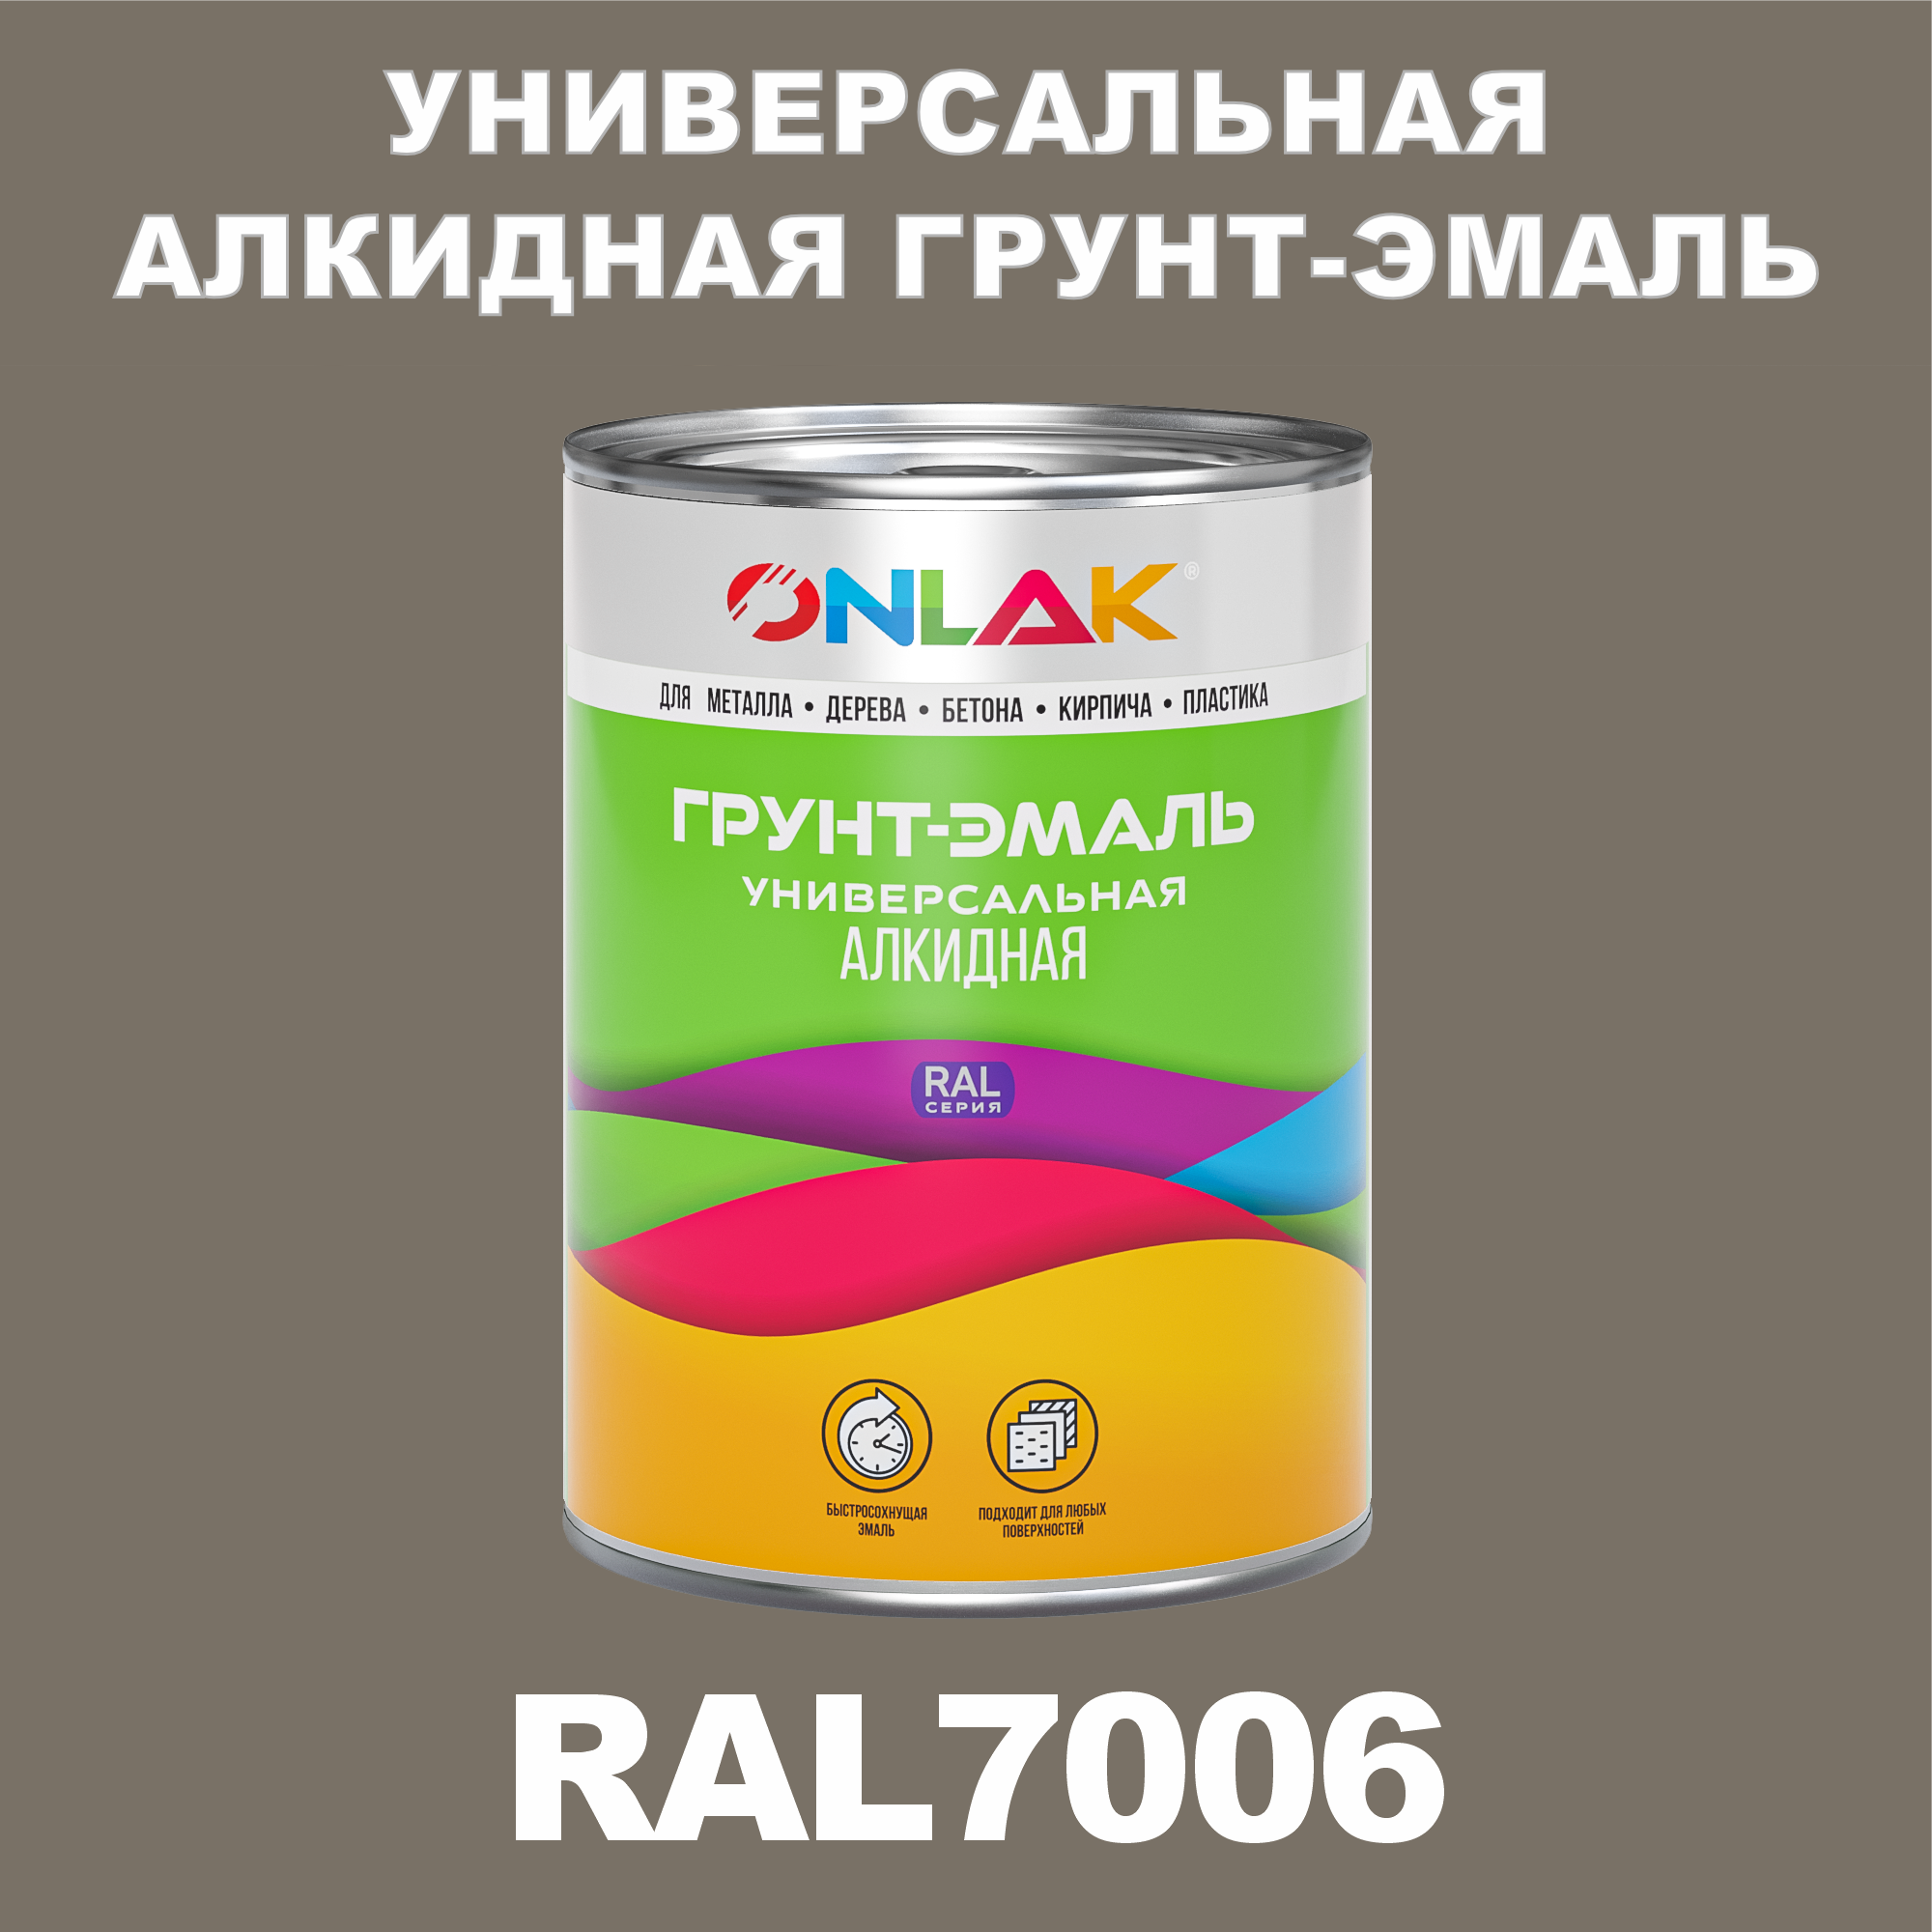 Грунт-эмаль ONLAK 1К RAL7006 антикоррозионная алкидная по металлу по ржавчине 1 кг